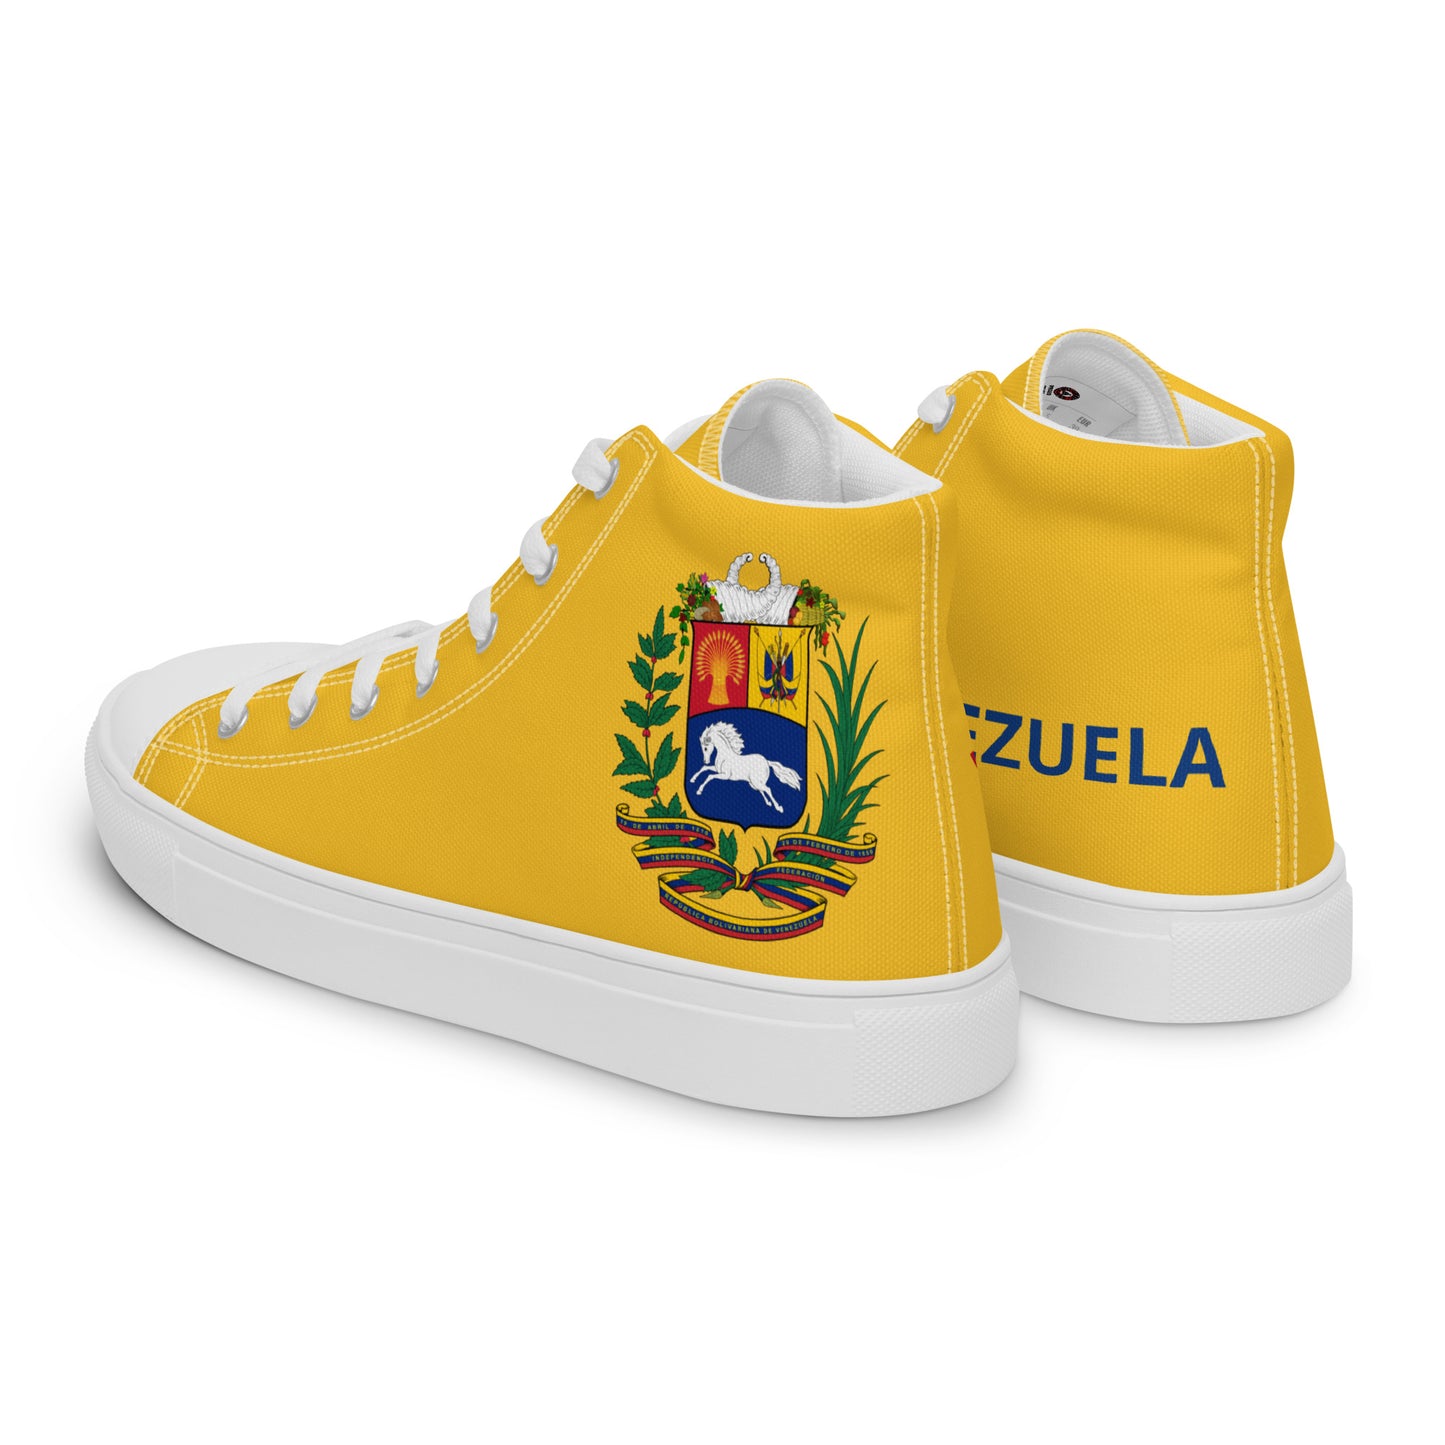 Venezuela - Women - Yellow - High top shoes